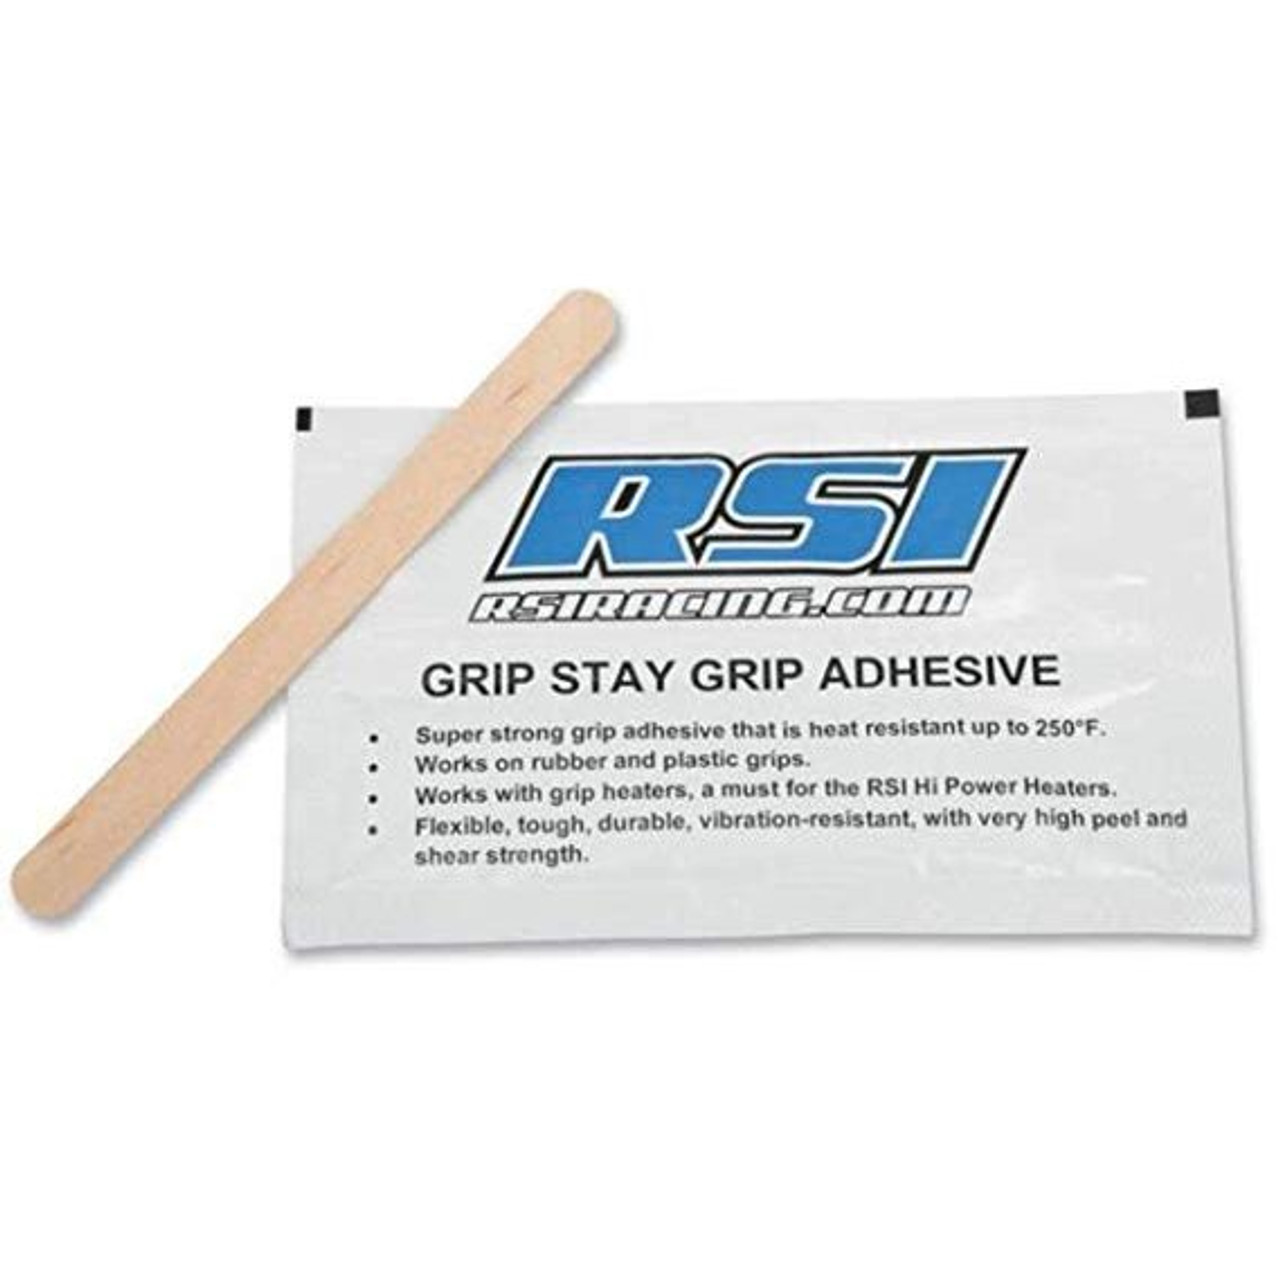 Adhésif RSI Grip Stay Grip - Revco.ca